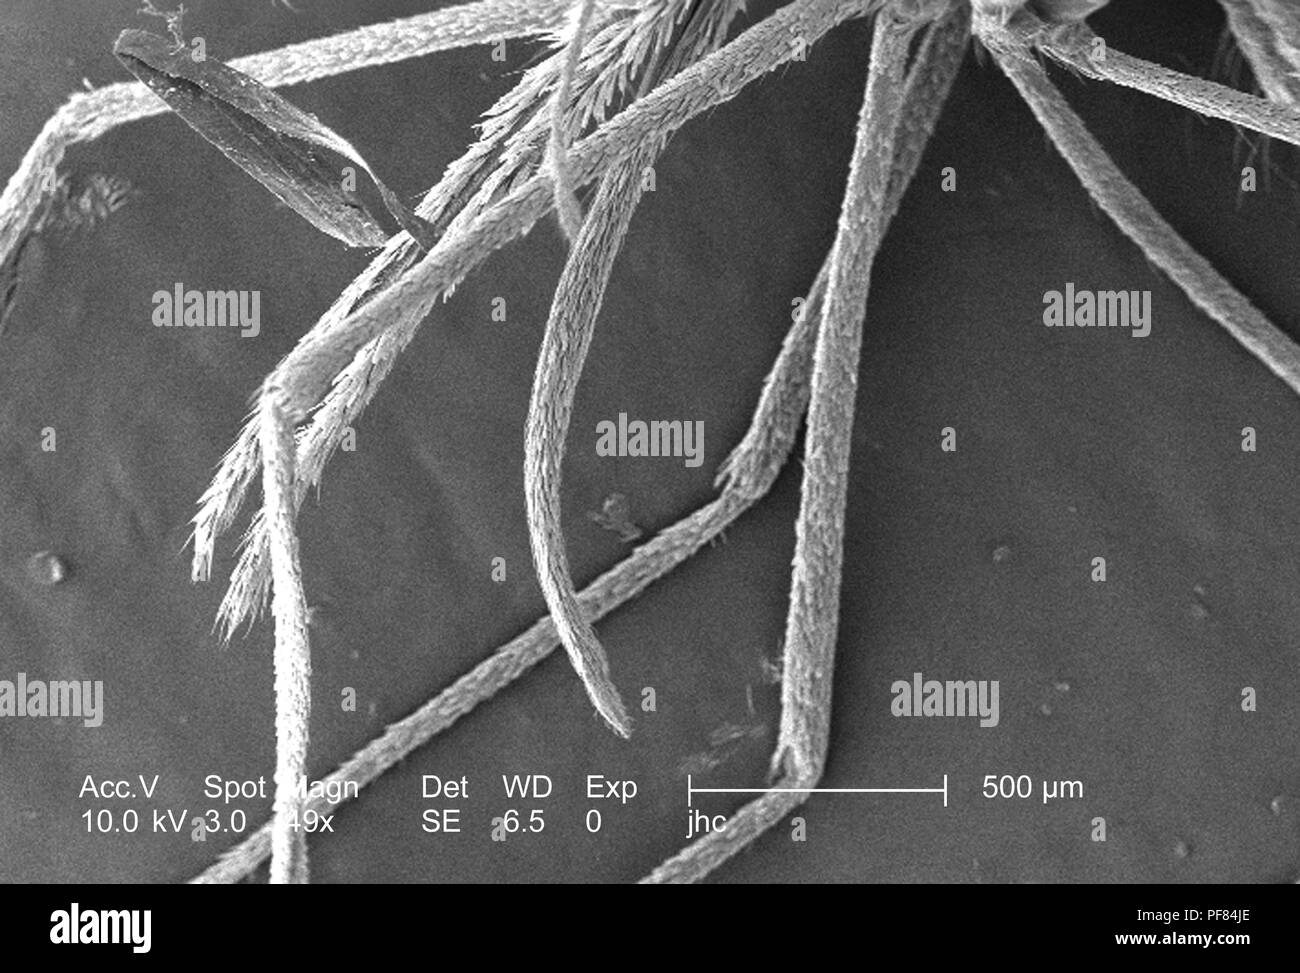 Caratteristiche morfologiche di un Anopheles gambiae zanzara, rivelato nella 49x di scansione ingrandita al microscopio elettronico (SEM) immagine, 2006. Immagine cortesia di centri per il controllo delle malattie (CDC) / Dr Paolo Howell. () Foto Stock